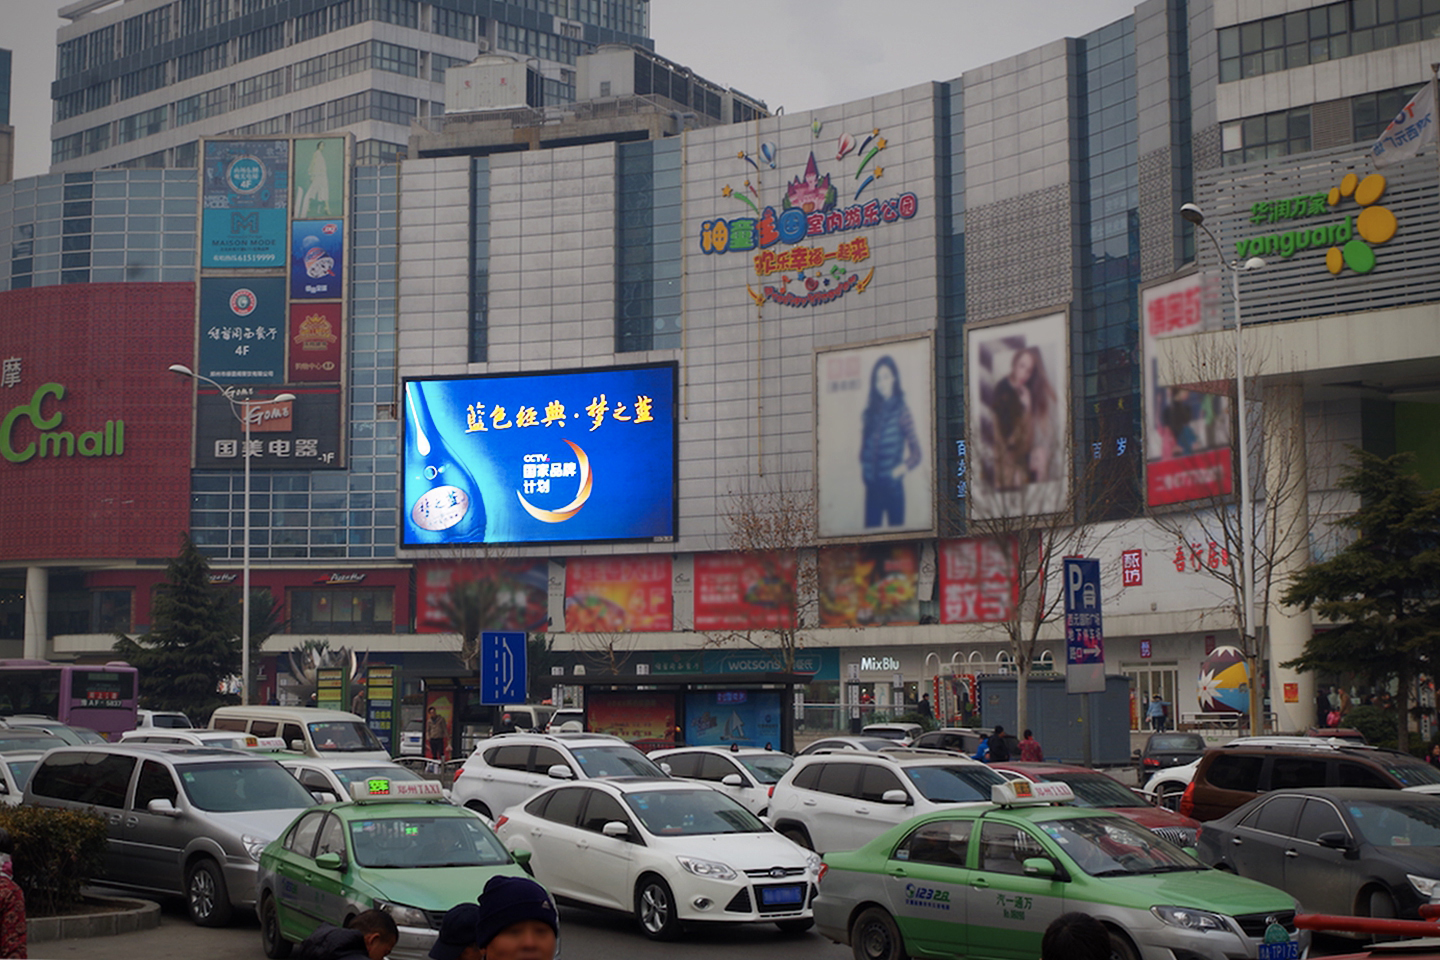 河南郑州中原区建设路与秦岭路交汇处西元国际广场商超卖场LED屏